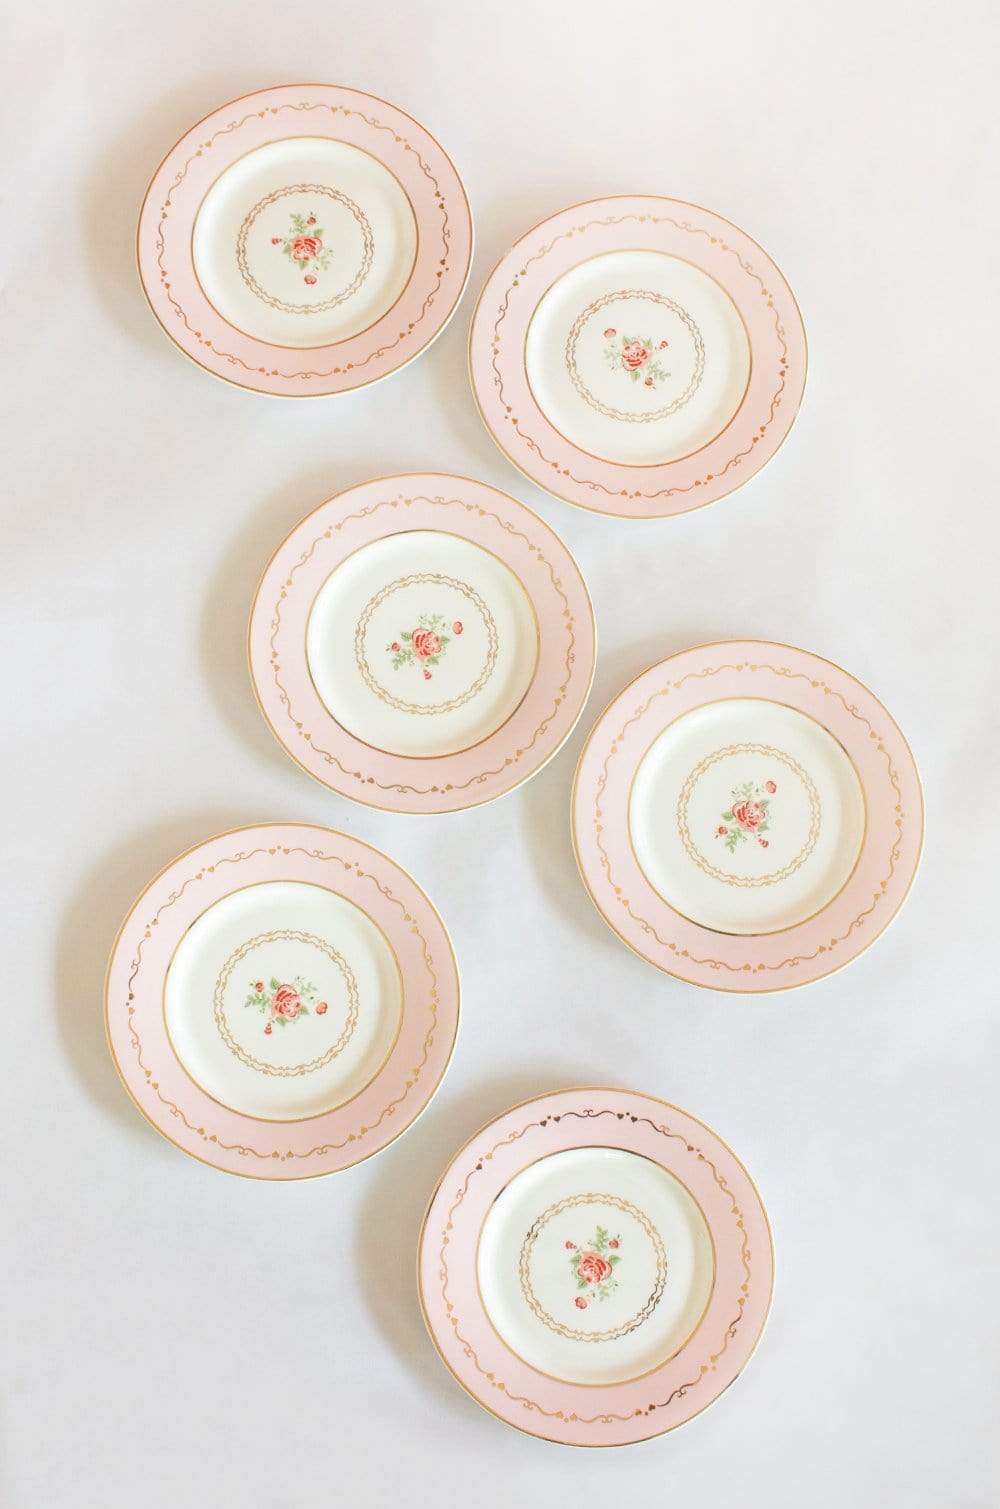 Vintage Rose Dessert Plates Set of 6 - Blossom Pink